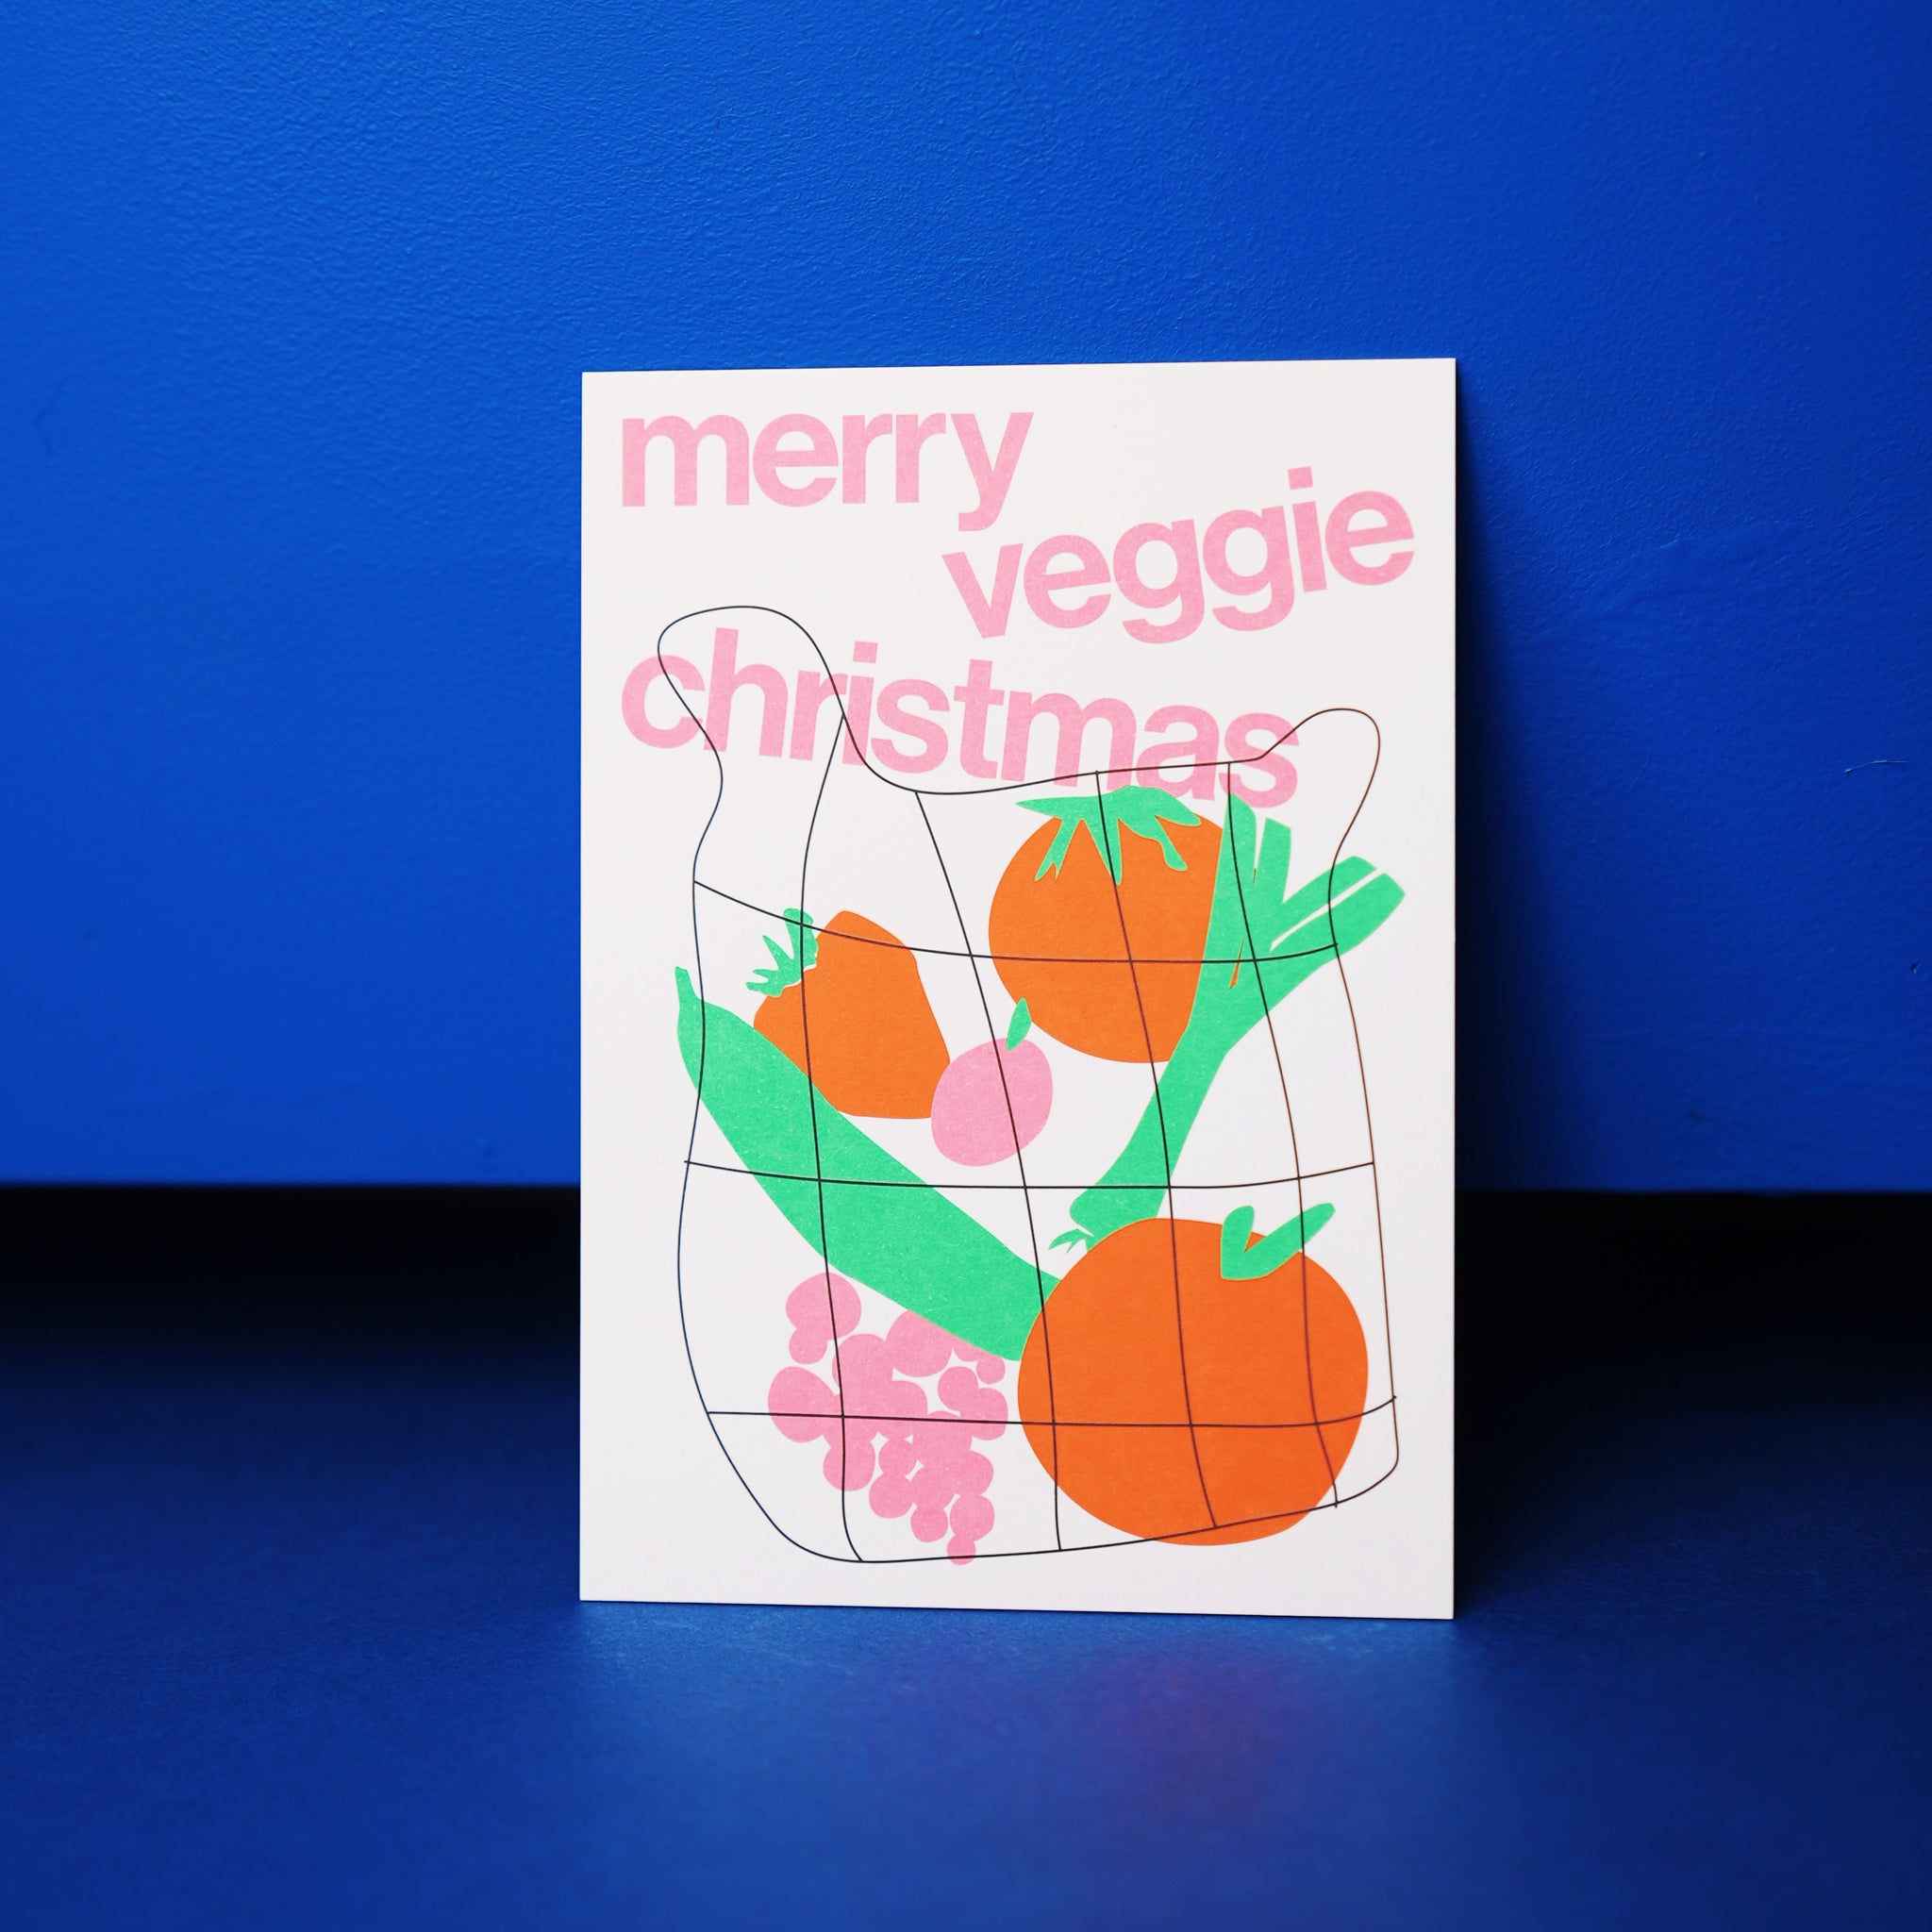 esistfreitag-Postkarte: Merry veggie christmas